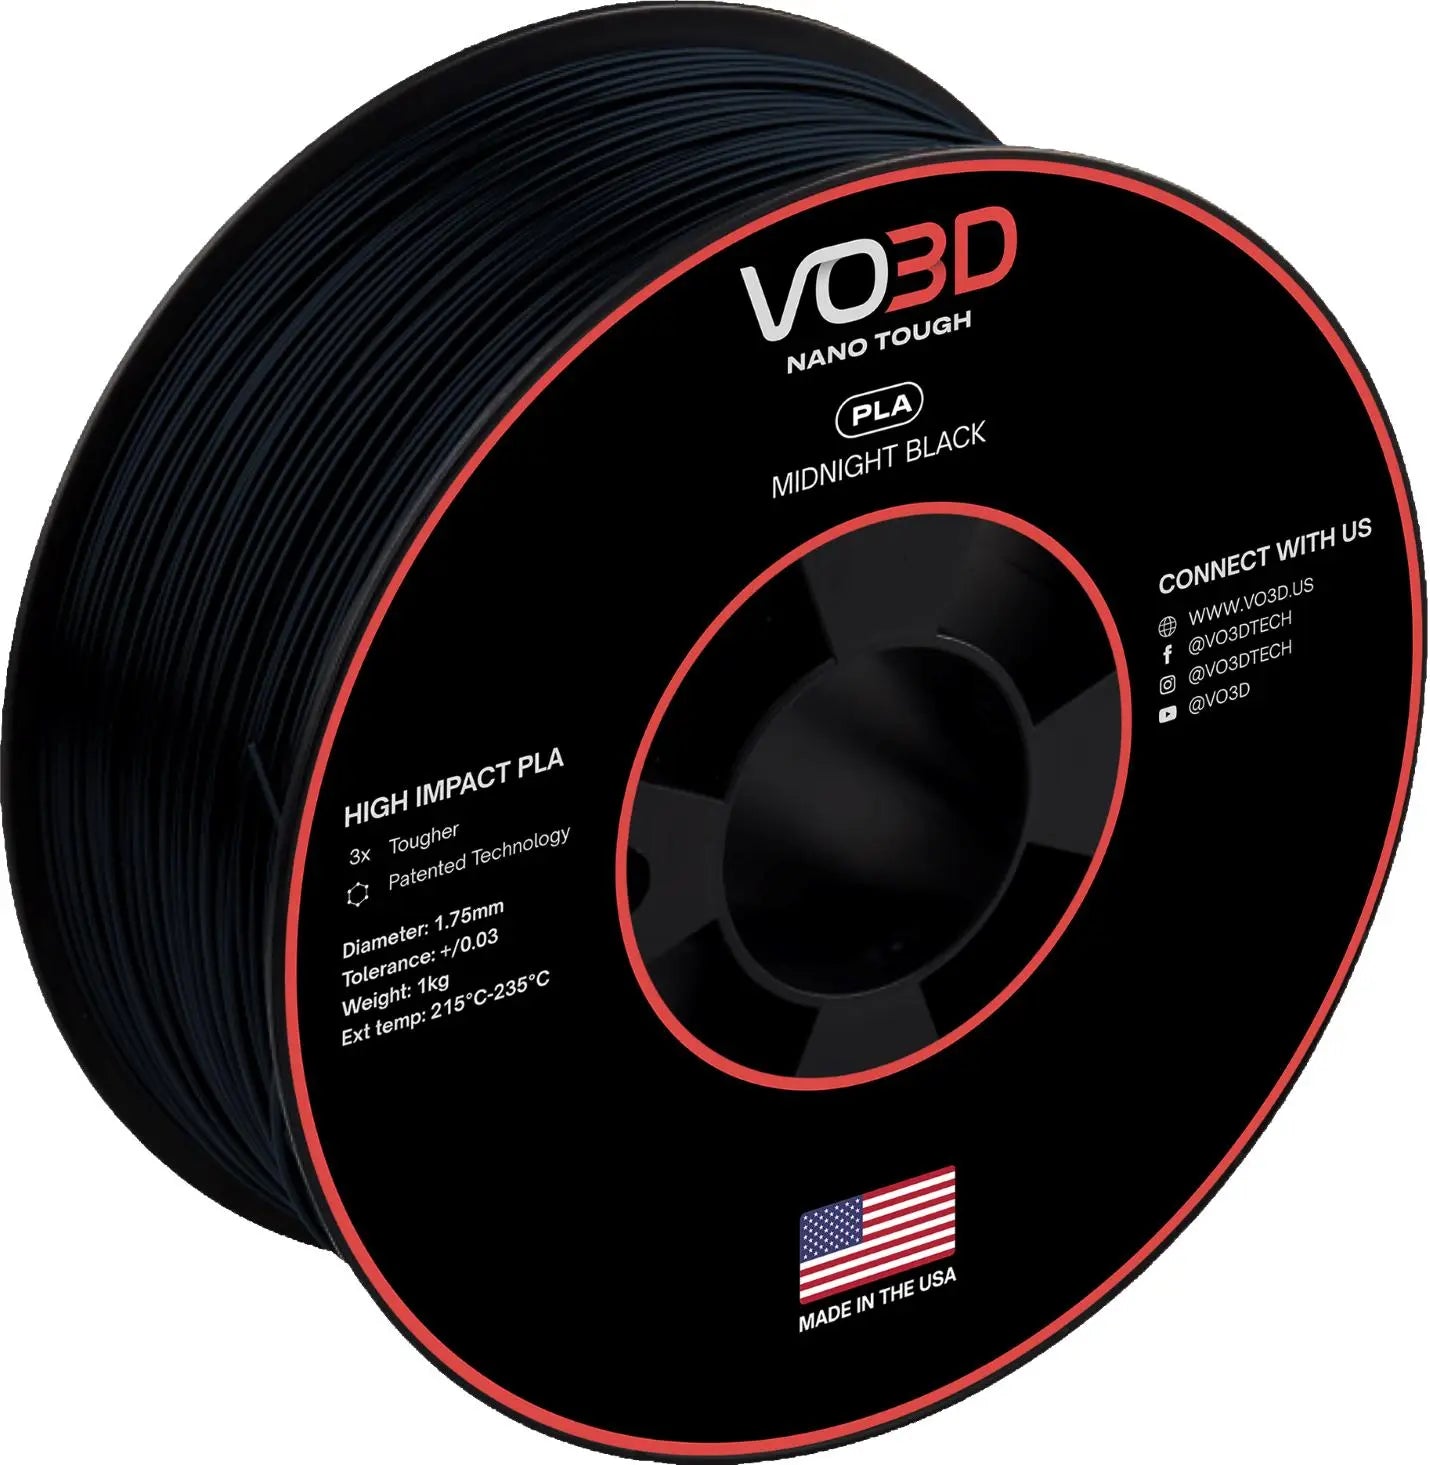 VO3D High Impact PLA - COEX 3D